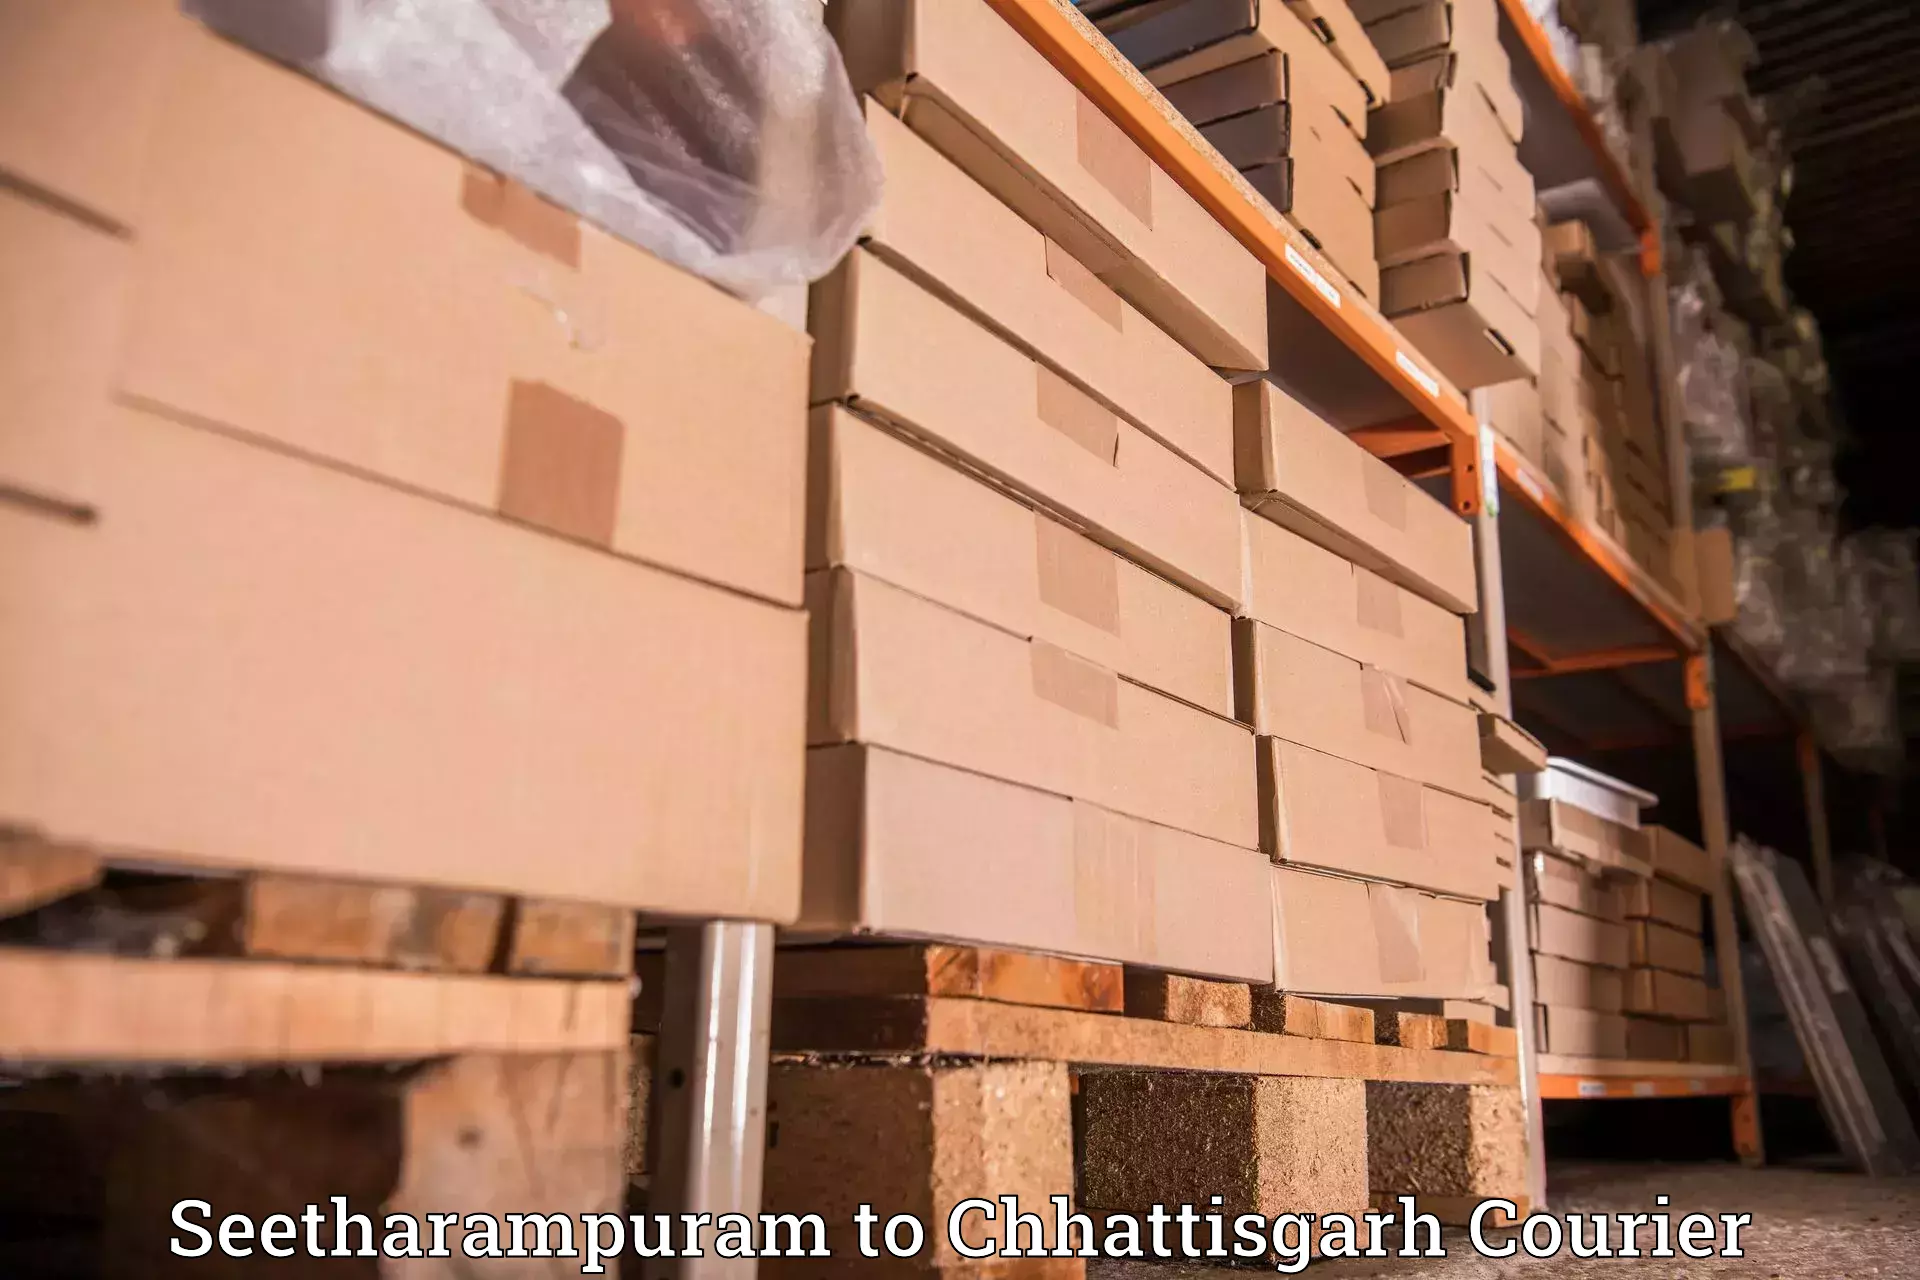 Digital courier platforms Seetharampuram to Bhatgaon